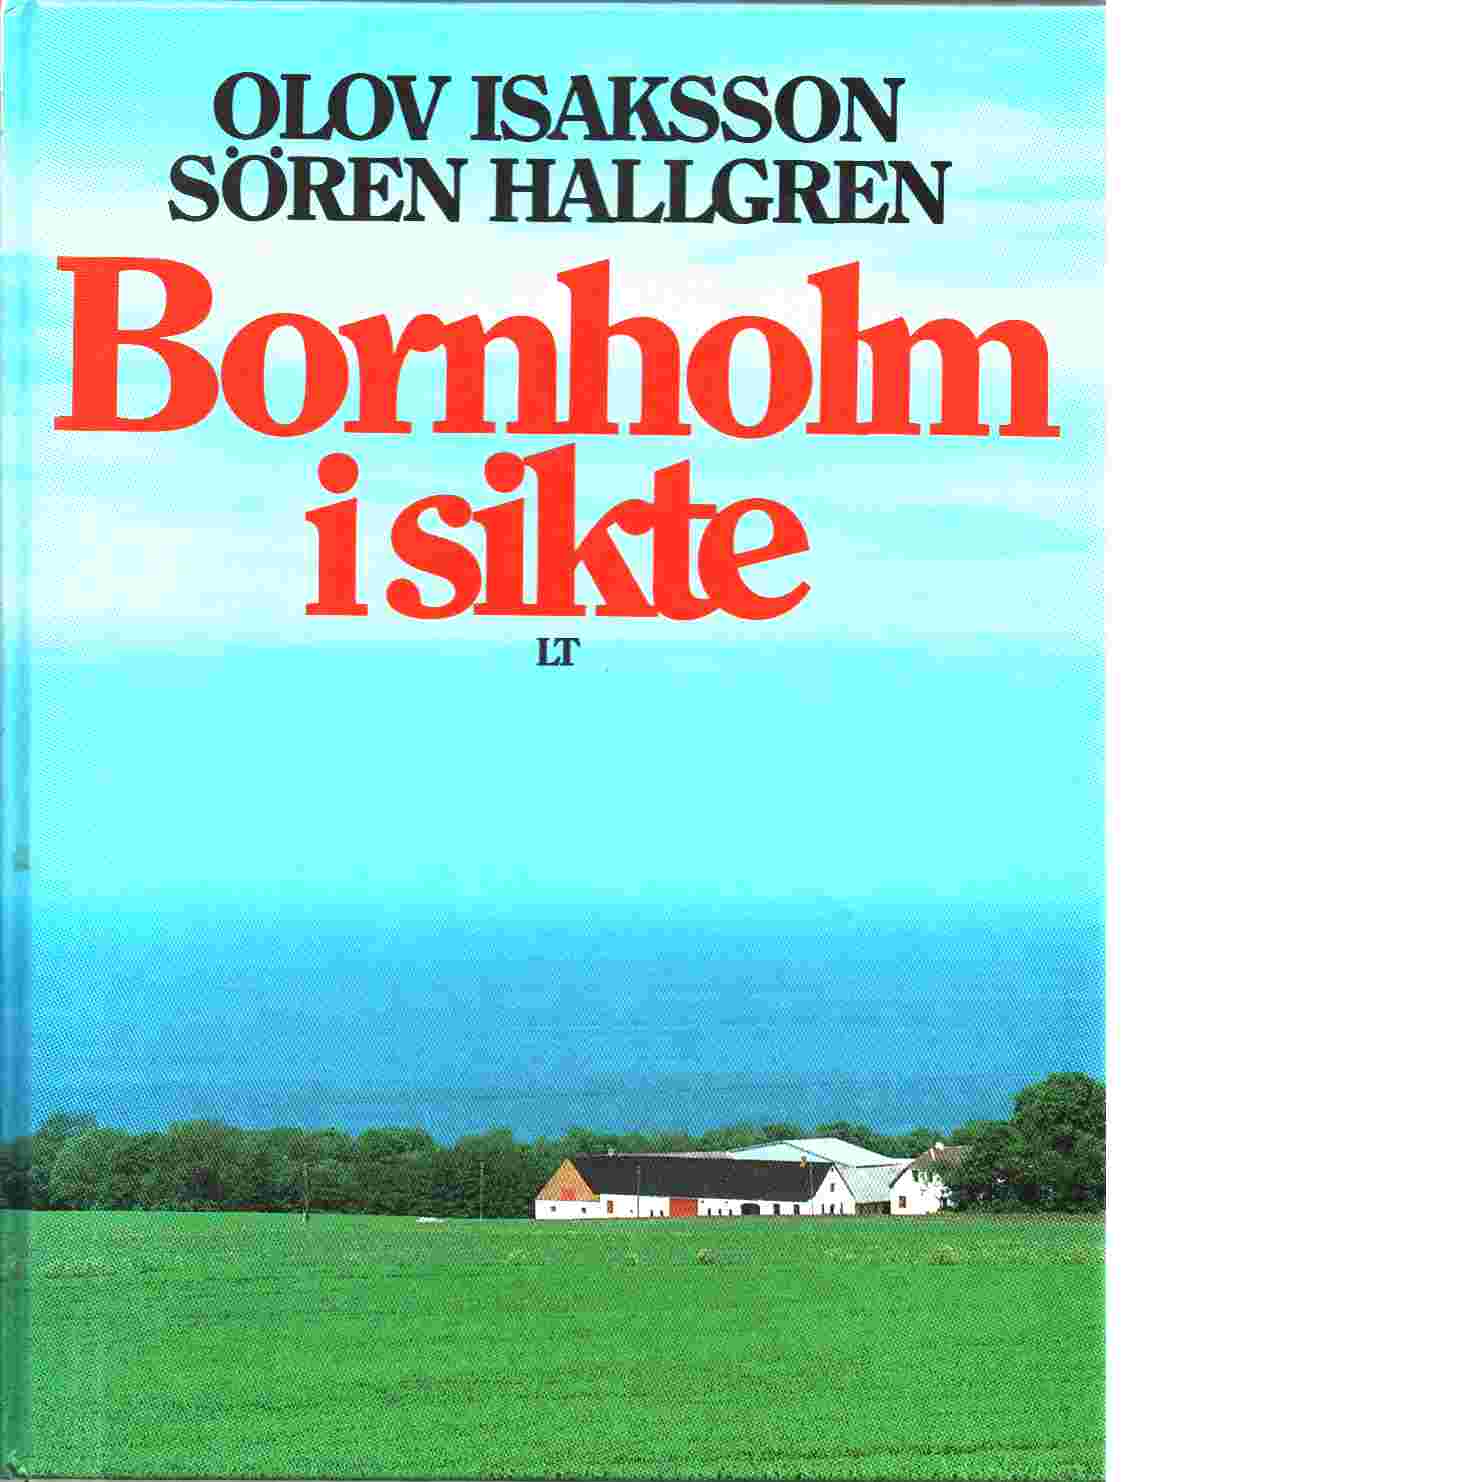 Bornholm i sikte - Isaksson, Olov  och Hallgren, Sören